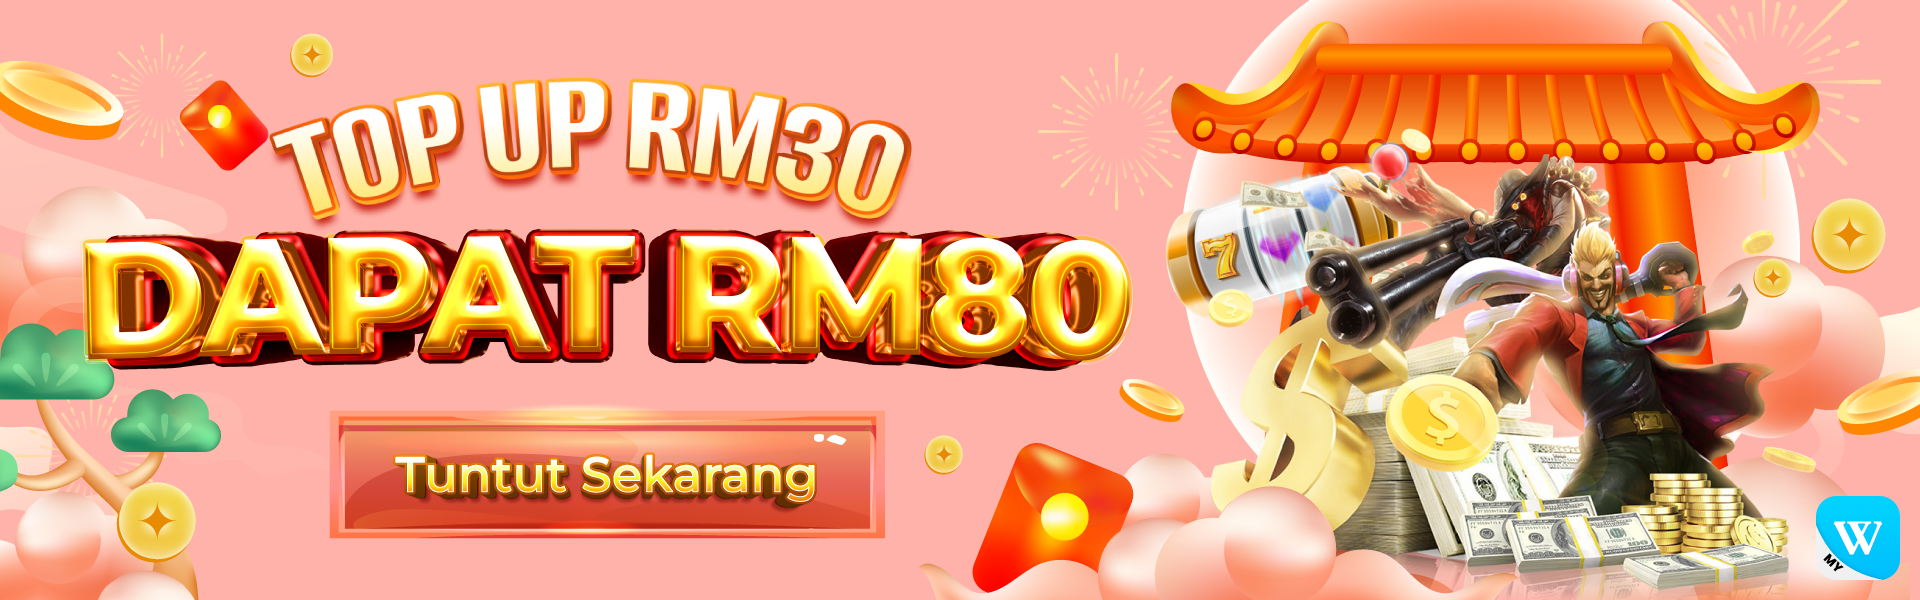 Top up RM30 Get RM80